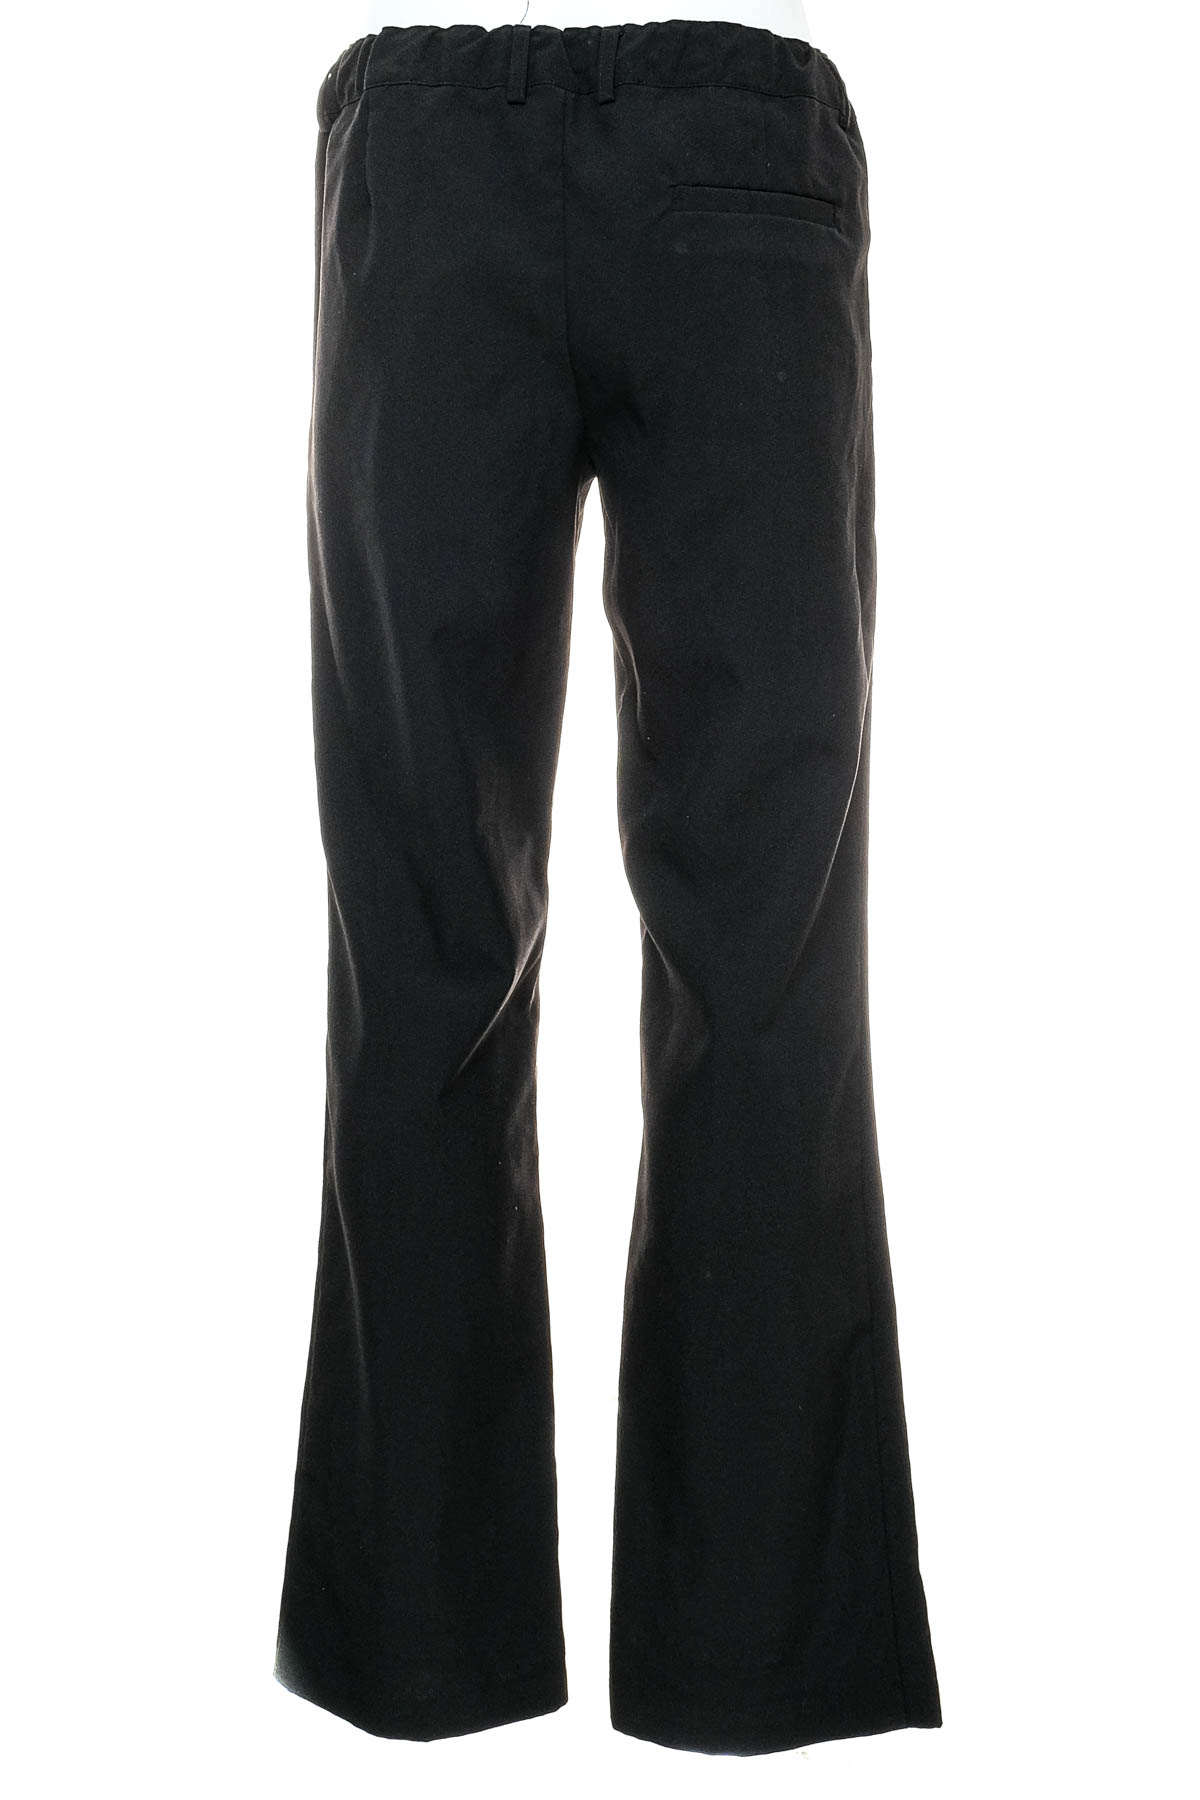 Spodnie dla chłopca - Bpc Bonprix Collection - 1